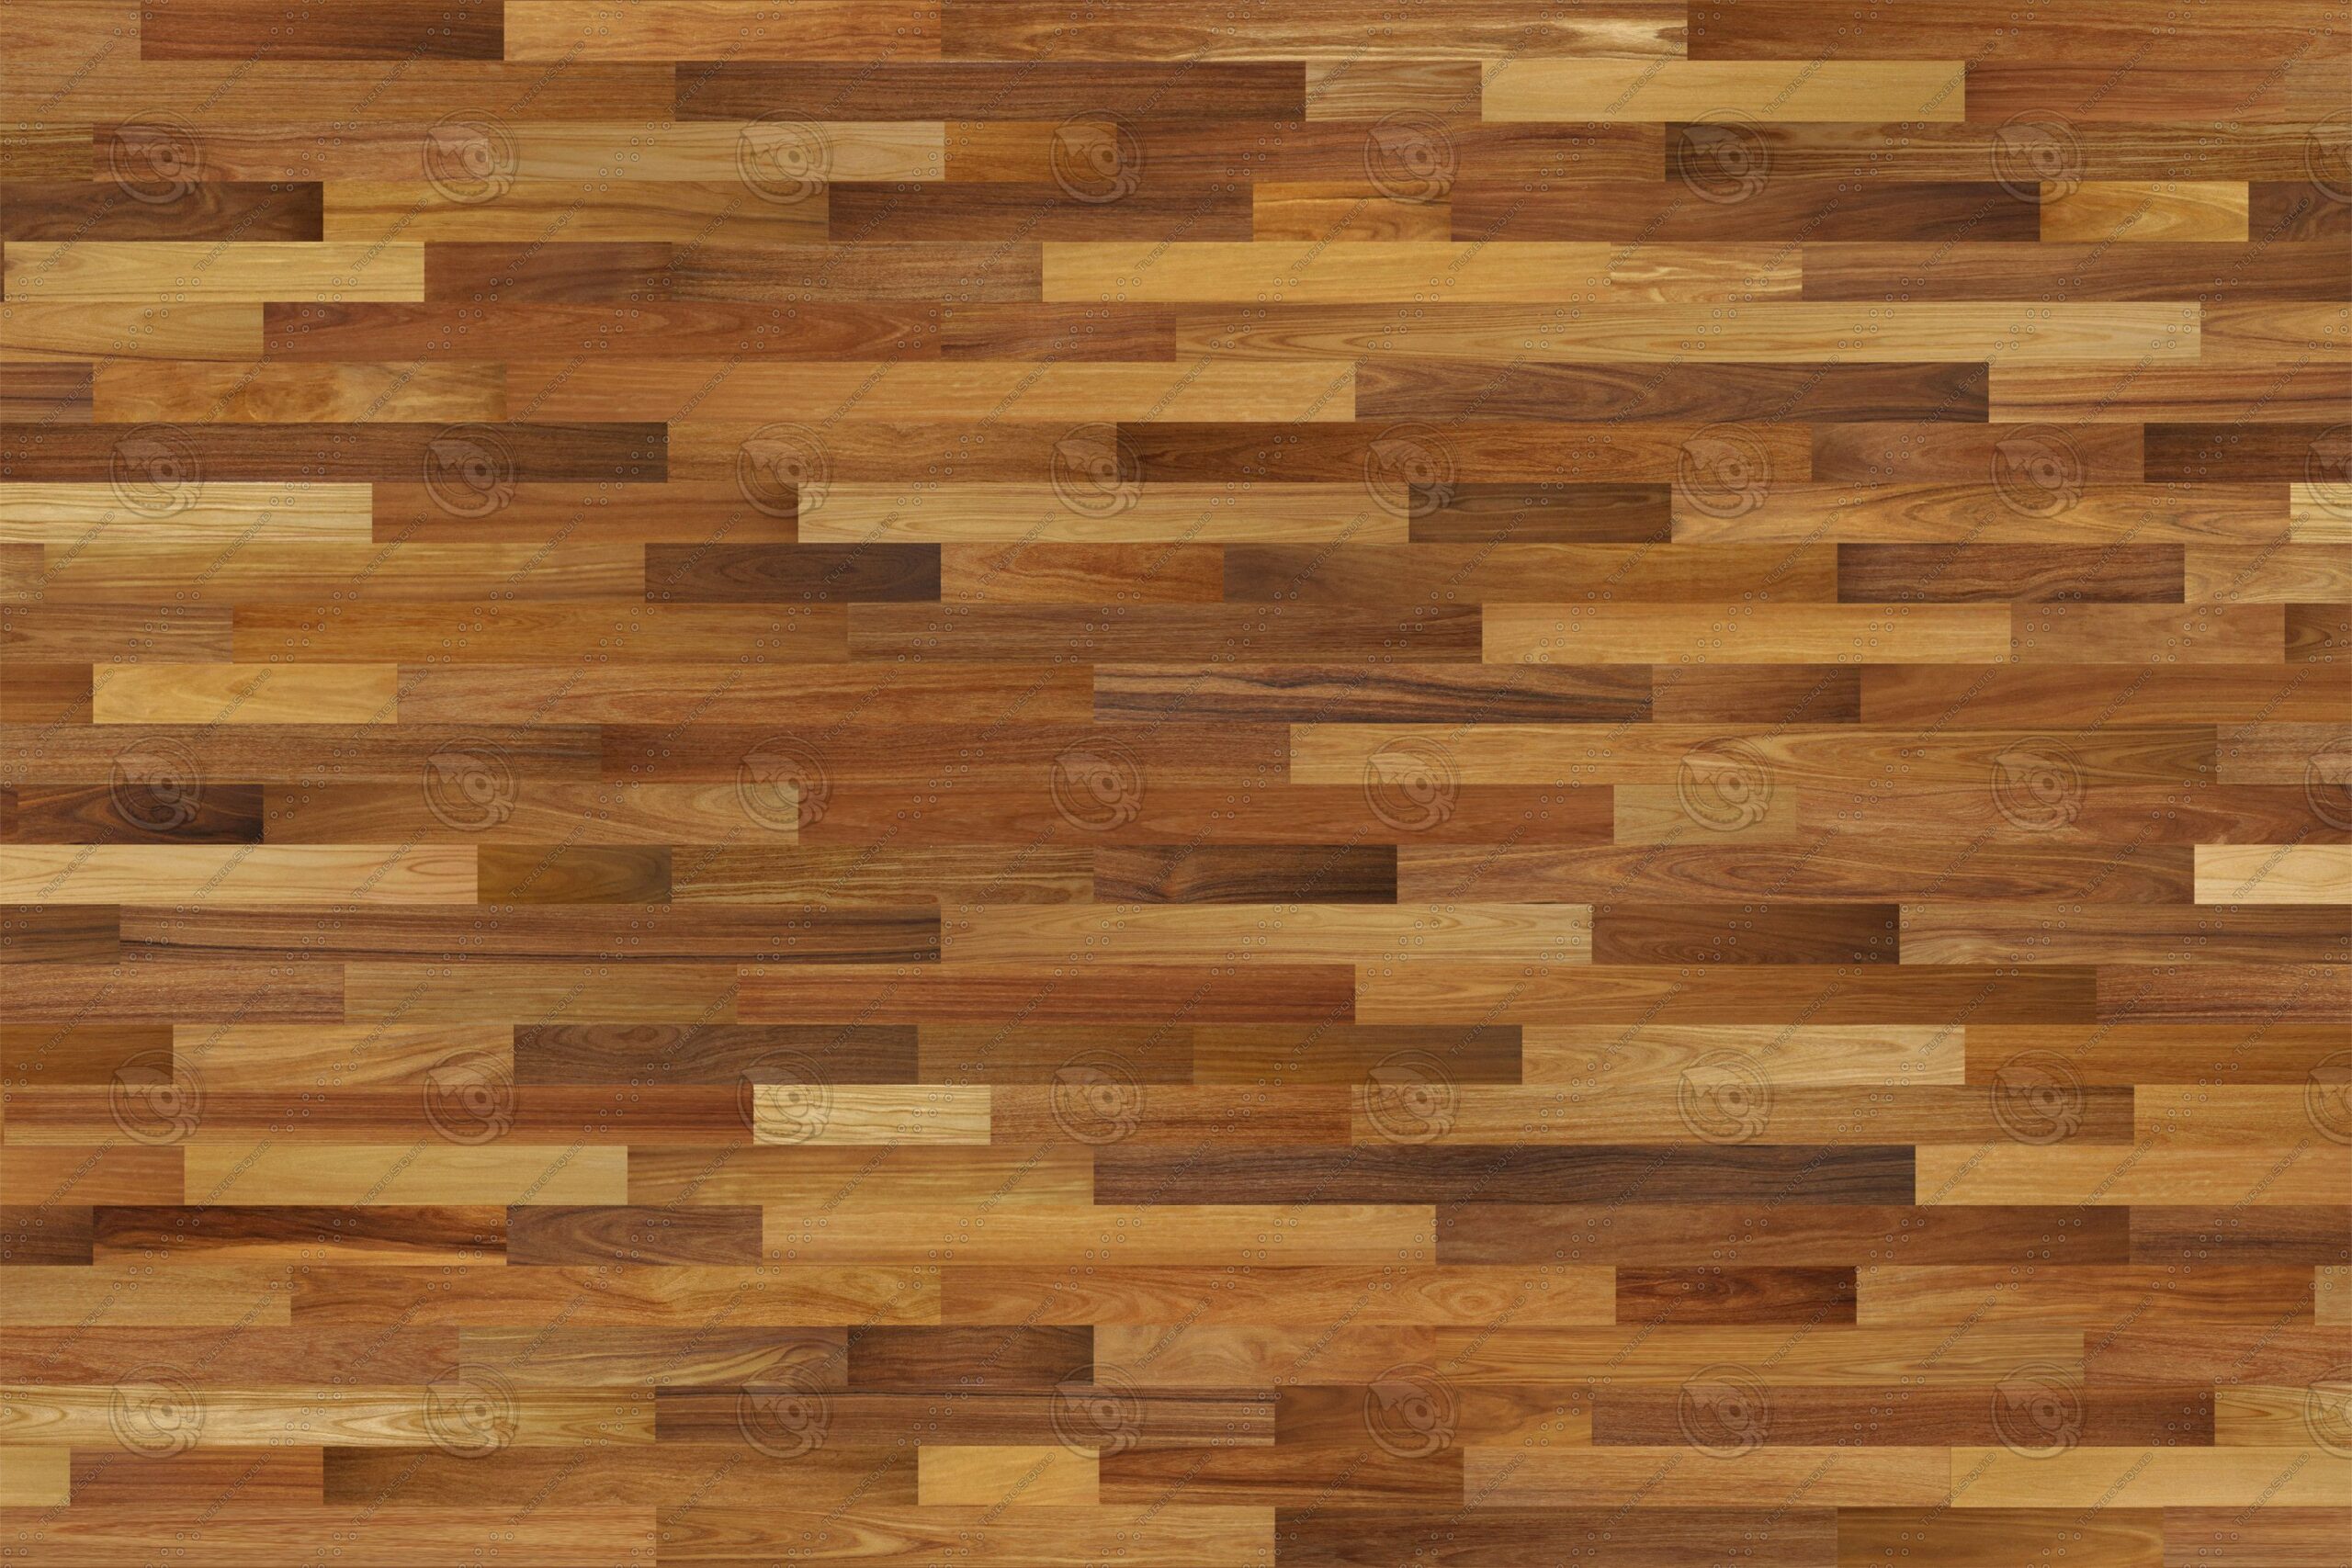 Combining Different Wood Species in Flooring